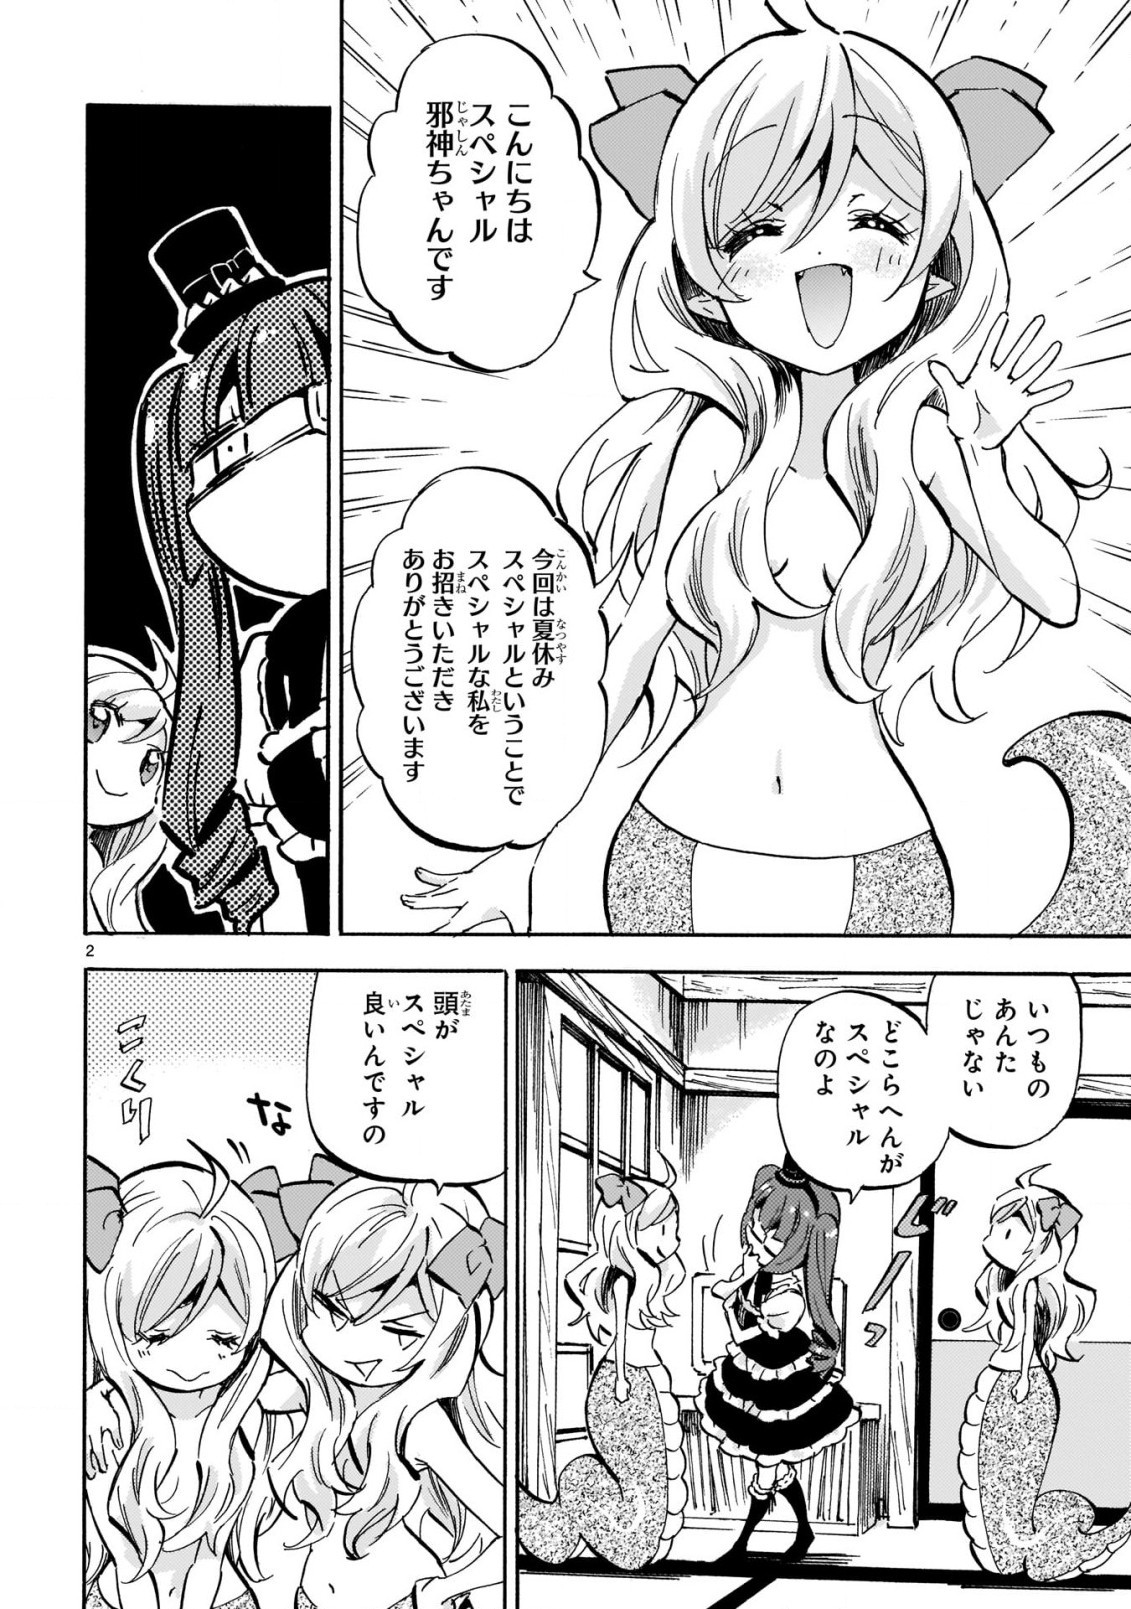 Jashin-chan Dropkick - Chapter 198.5 - Page 2